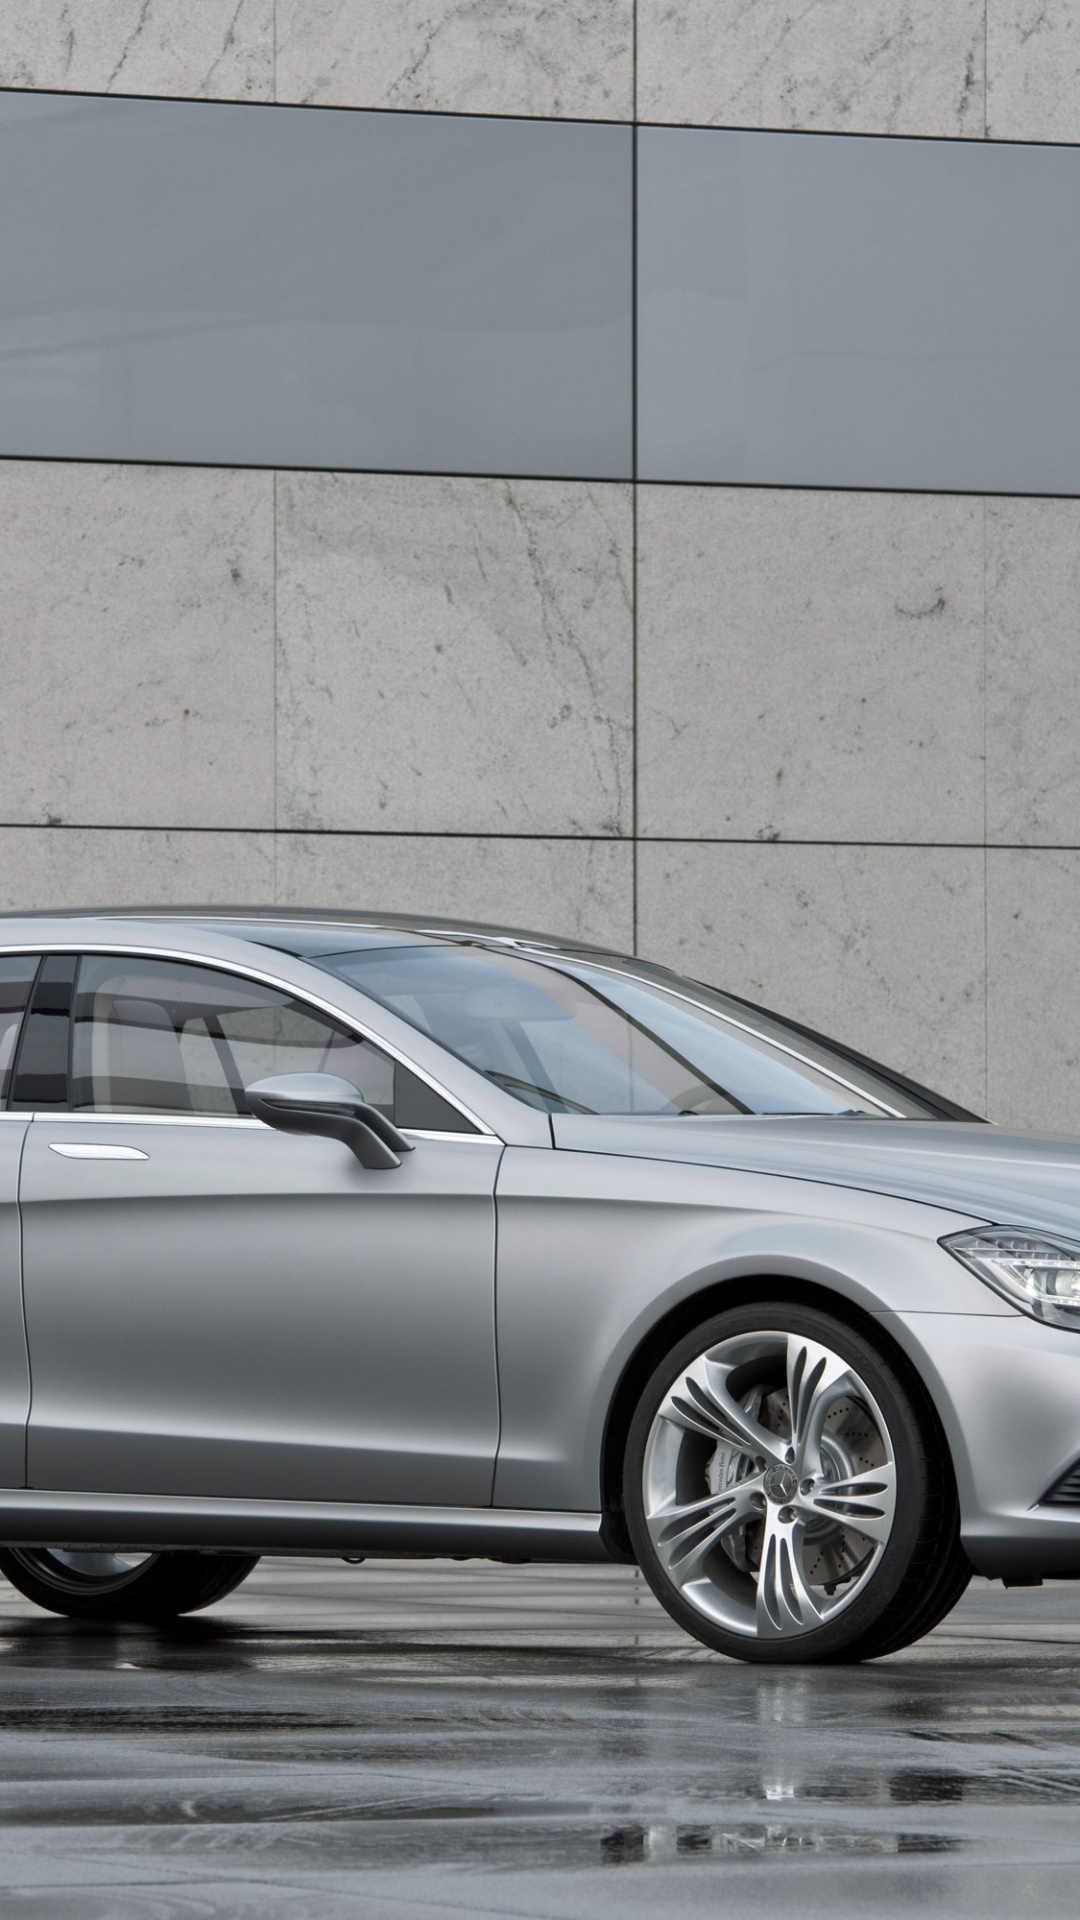 Silver Mercedes Benz Coupe Estacionado Junto a la Pared Marrón. Wallpaper in 1080x1920 Resolution